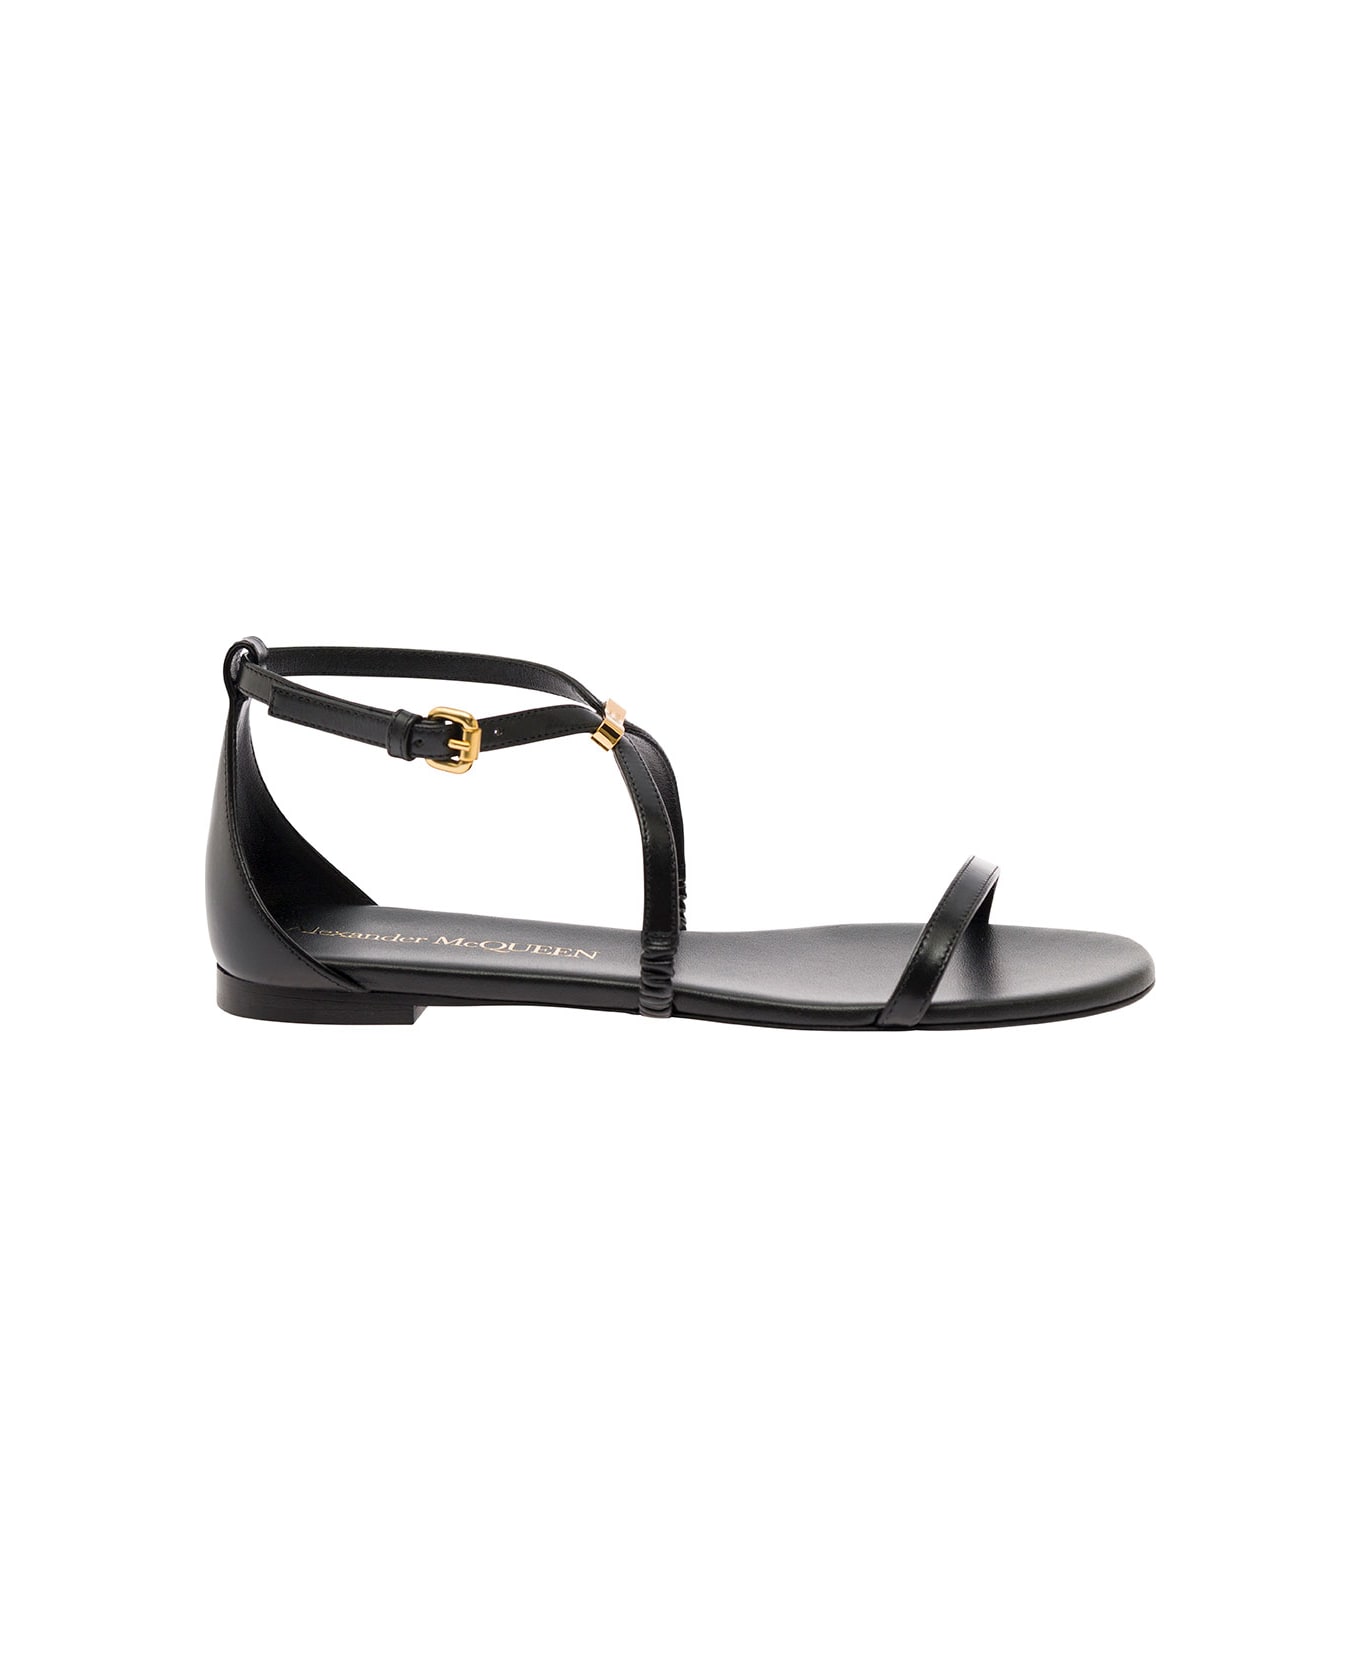 Alexander McQueen Flat Sandals - BLACK/GOLD